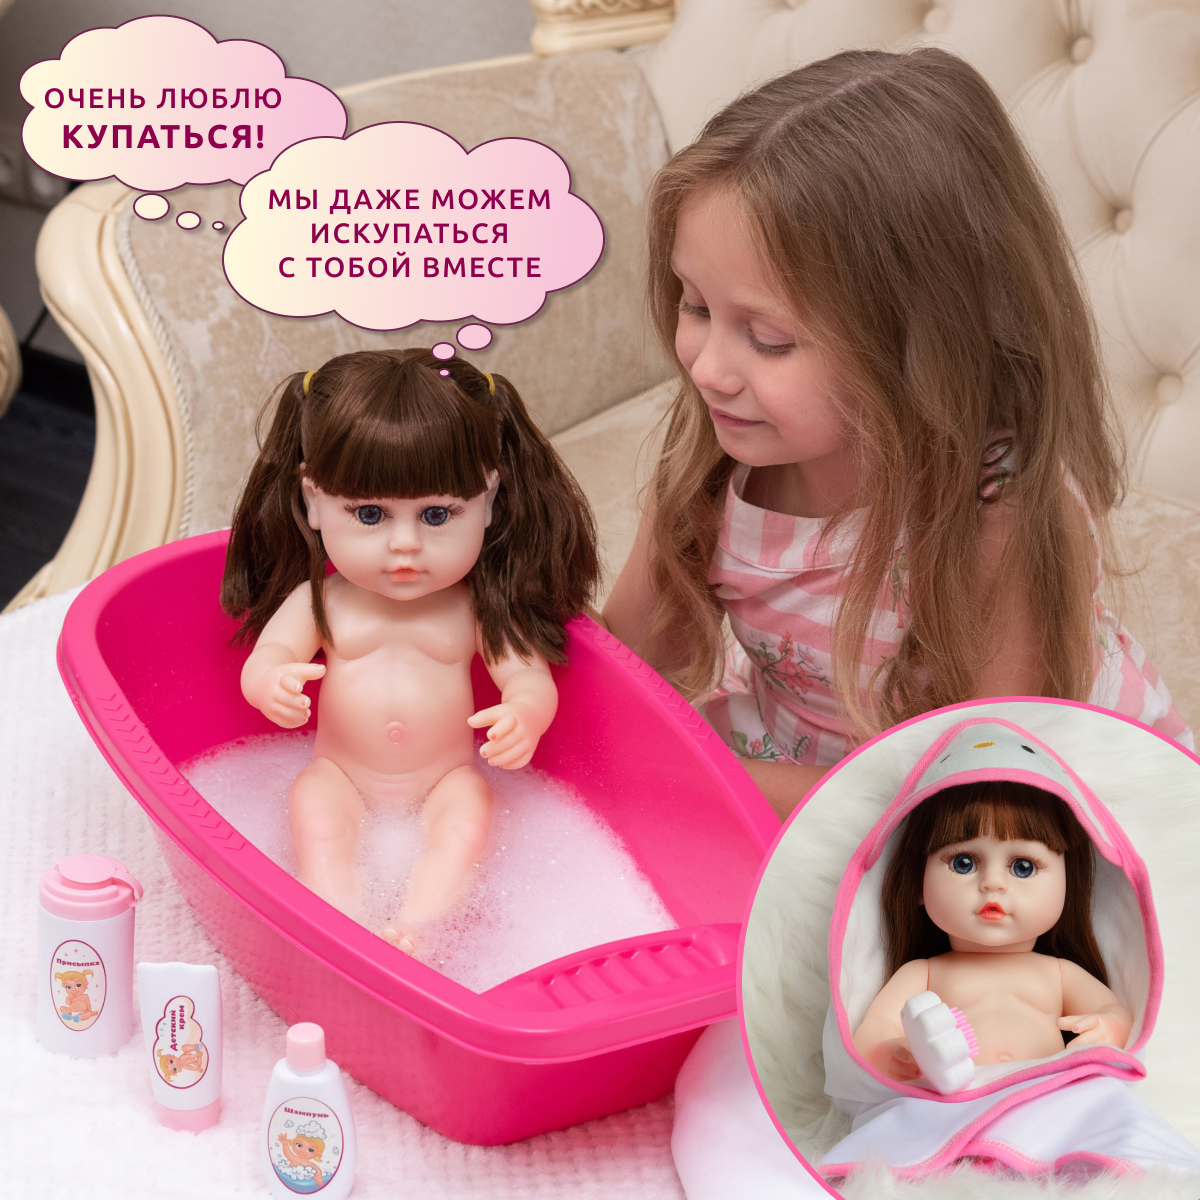 Кукла Реборн QA BABY Альбина девочка интерактивная Пупс набор игрушки для ванной для девочки 38 см 3805 - фото 6